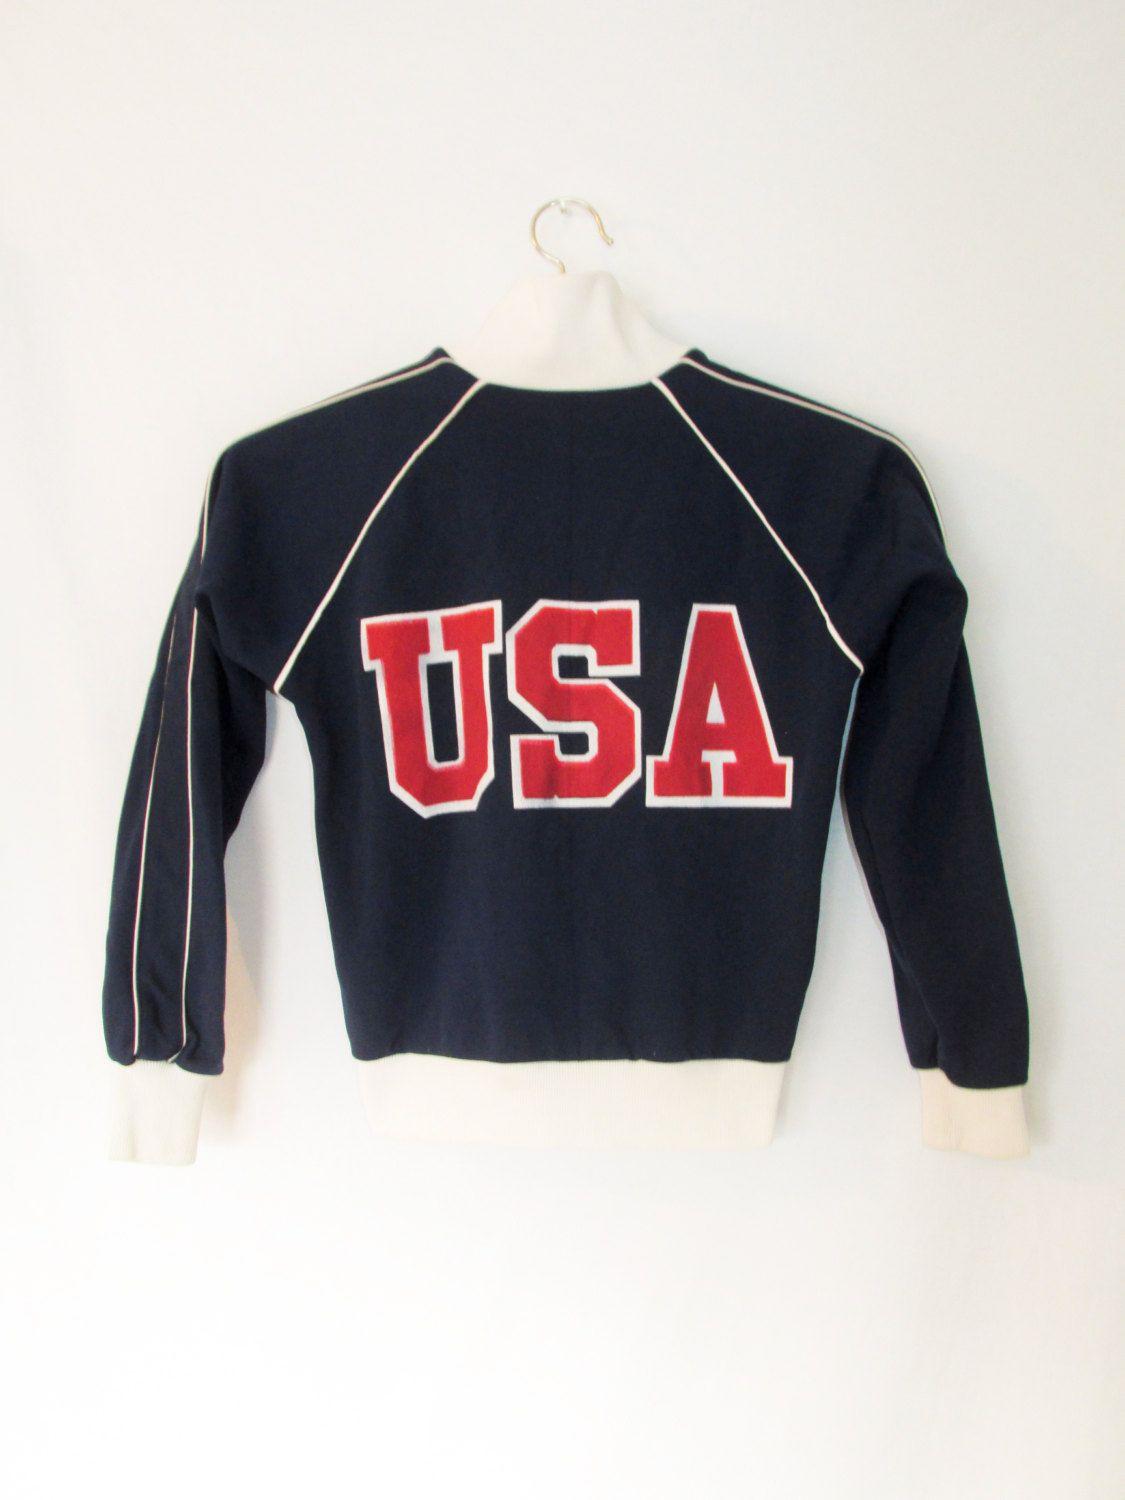 Old Red White Blue Clothing Logo - Vintage USA Track Warm Up Jacket | something old | Pinterest ...